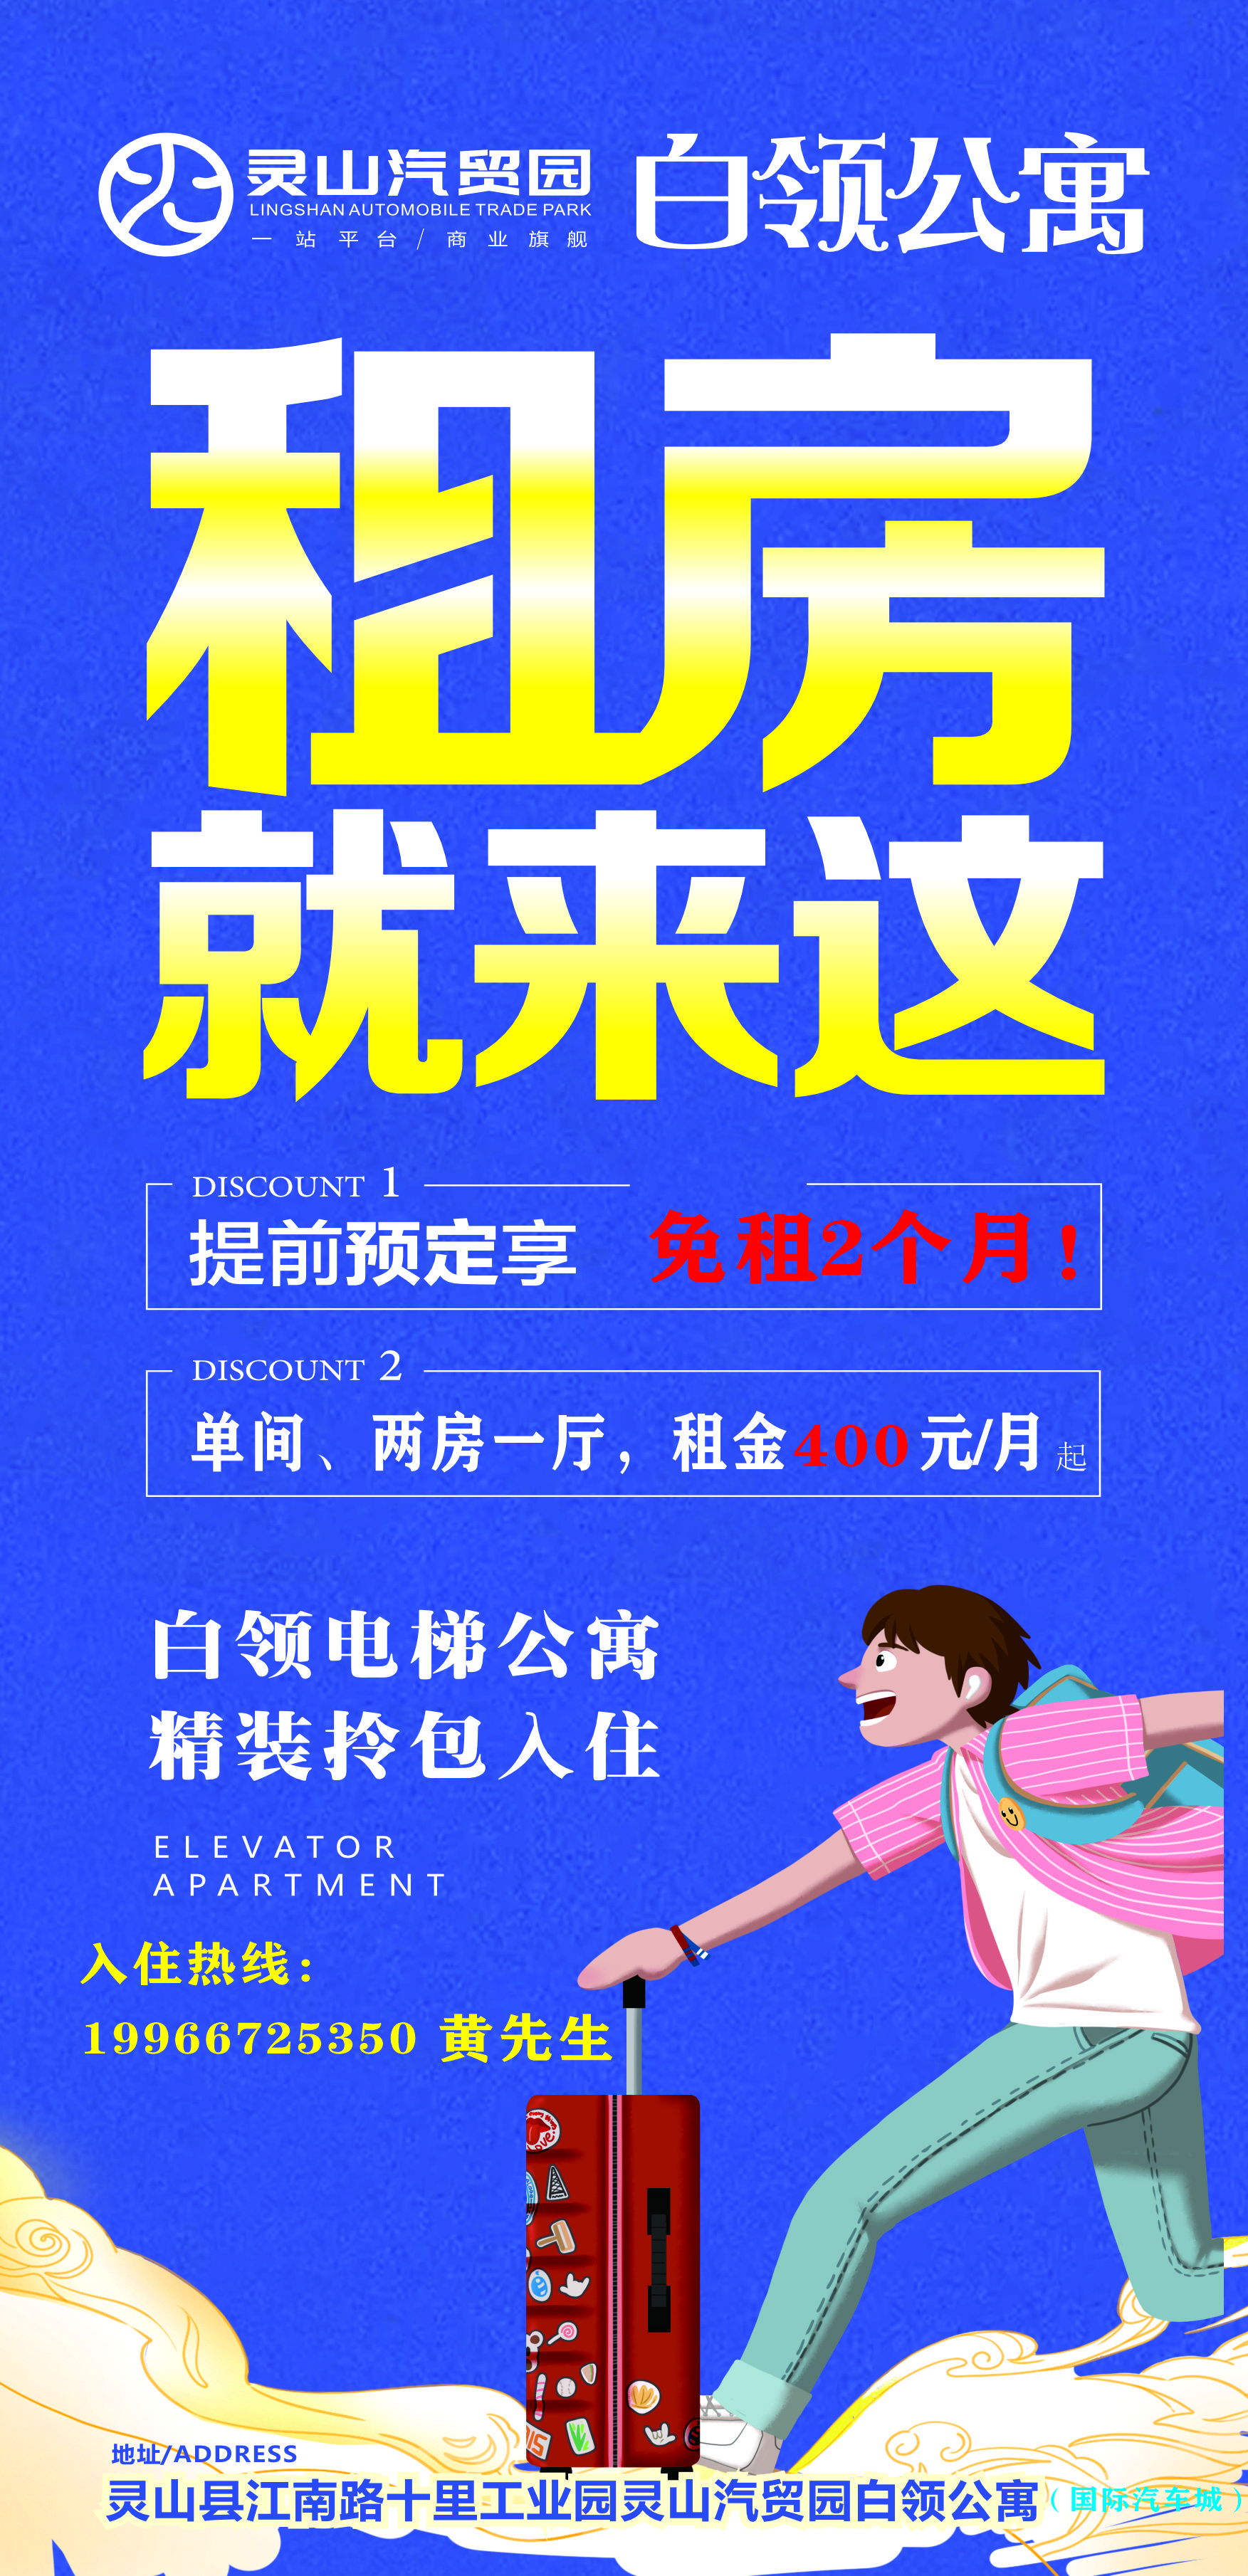 招租 微推图11.3.jpg